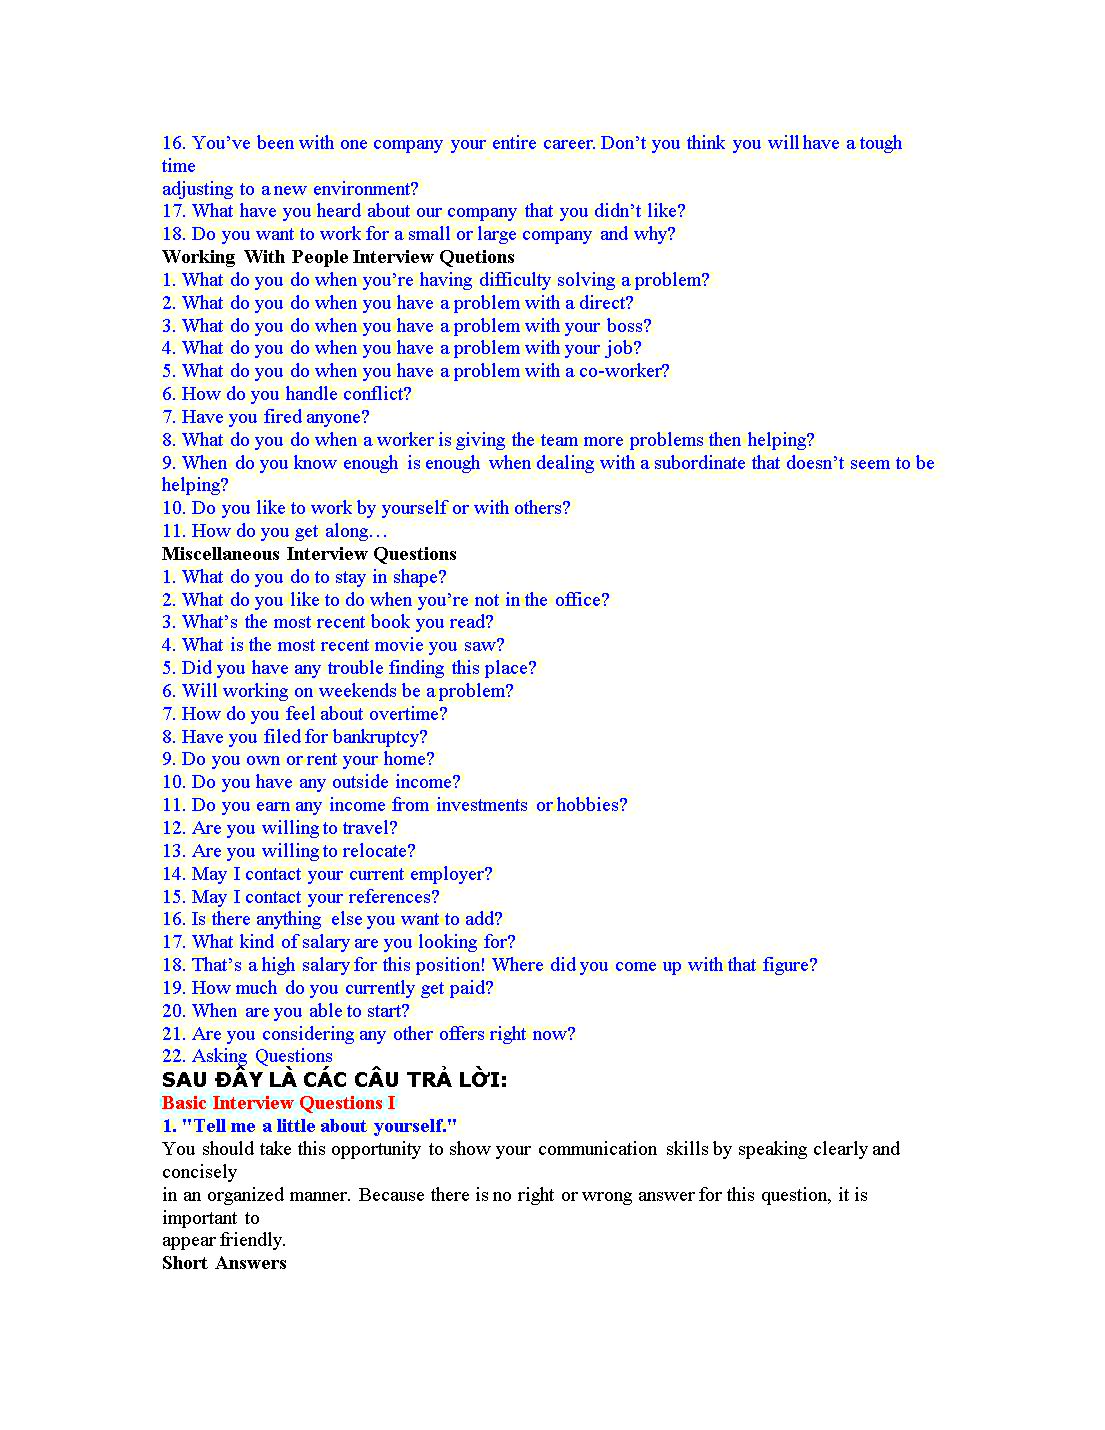 125 Câu hỏi trả lời khi phỏng vấn xin việc bằng tiếng Anh trang 10